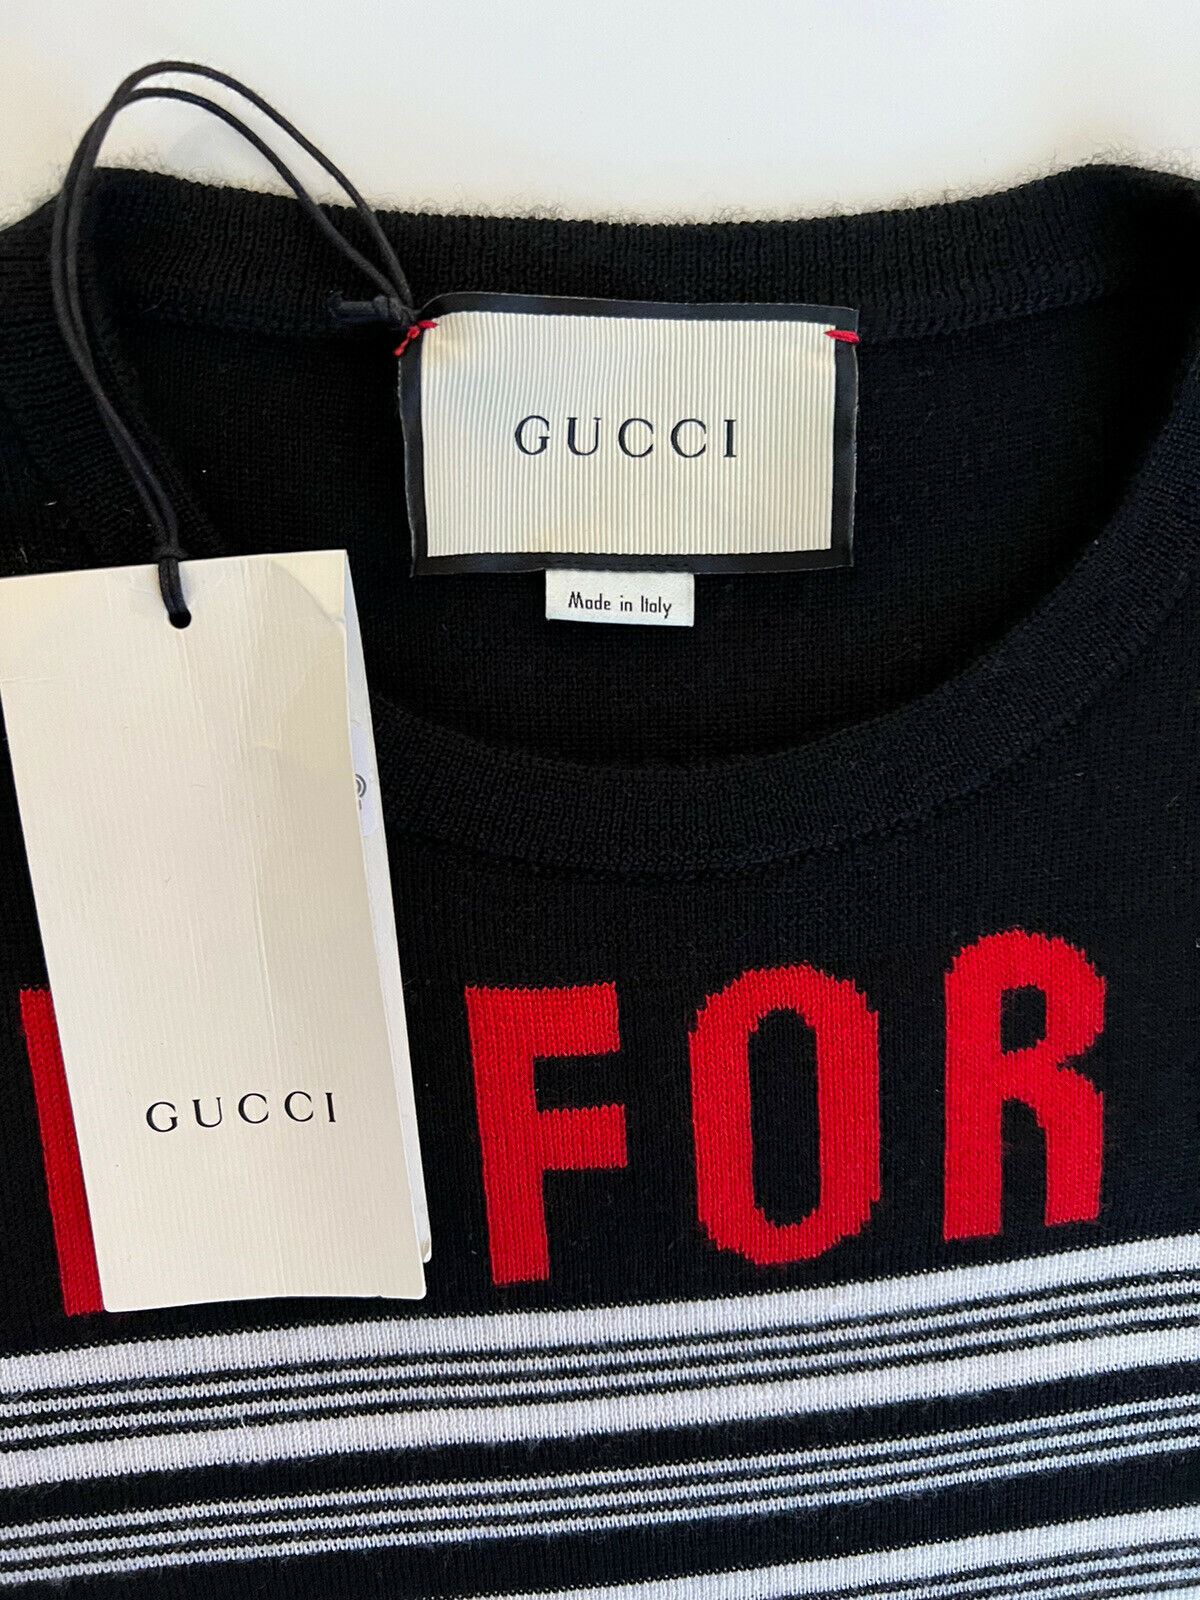 Женский свитер Gucci Blind for Love, черный кашемир/шелк, средний вес, NWT 1280 долларов США, Италия